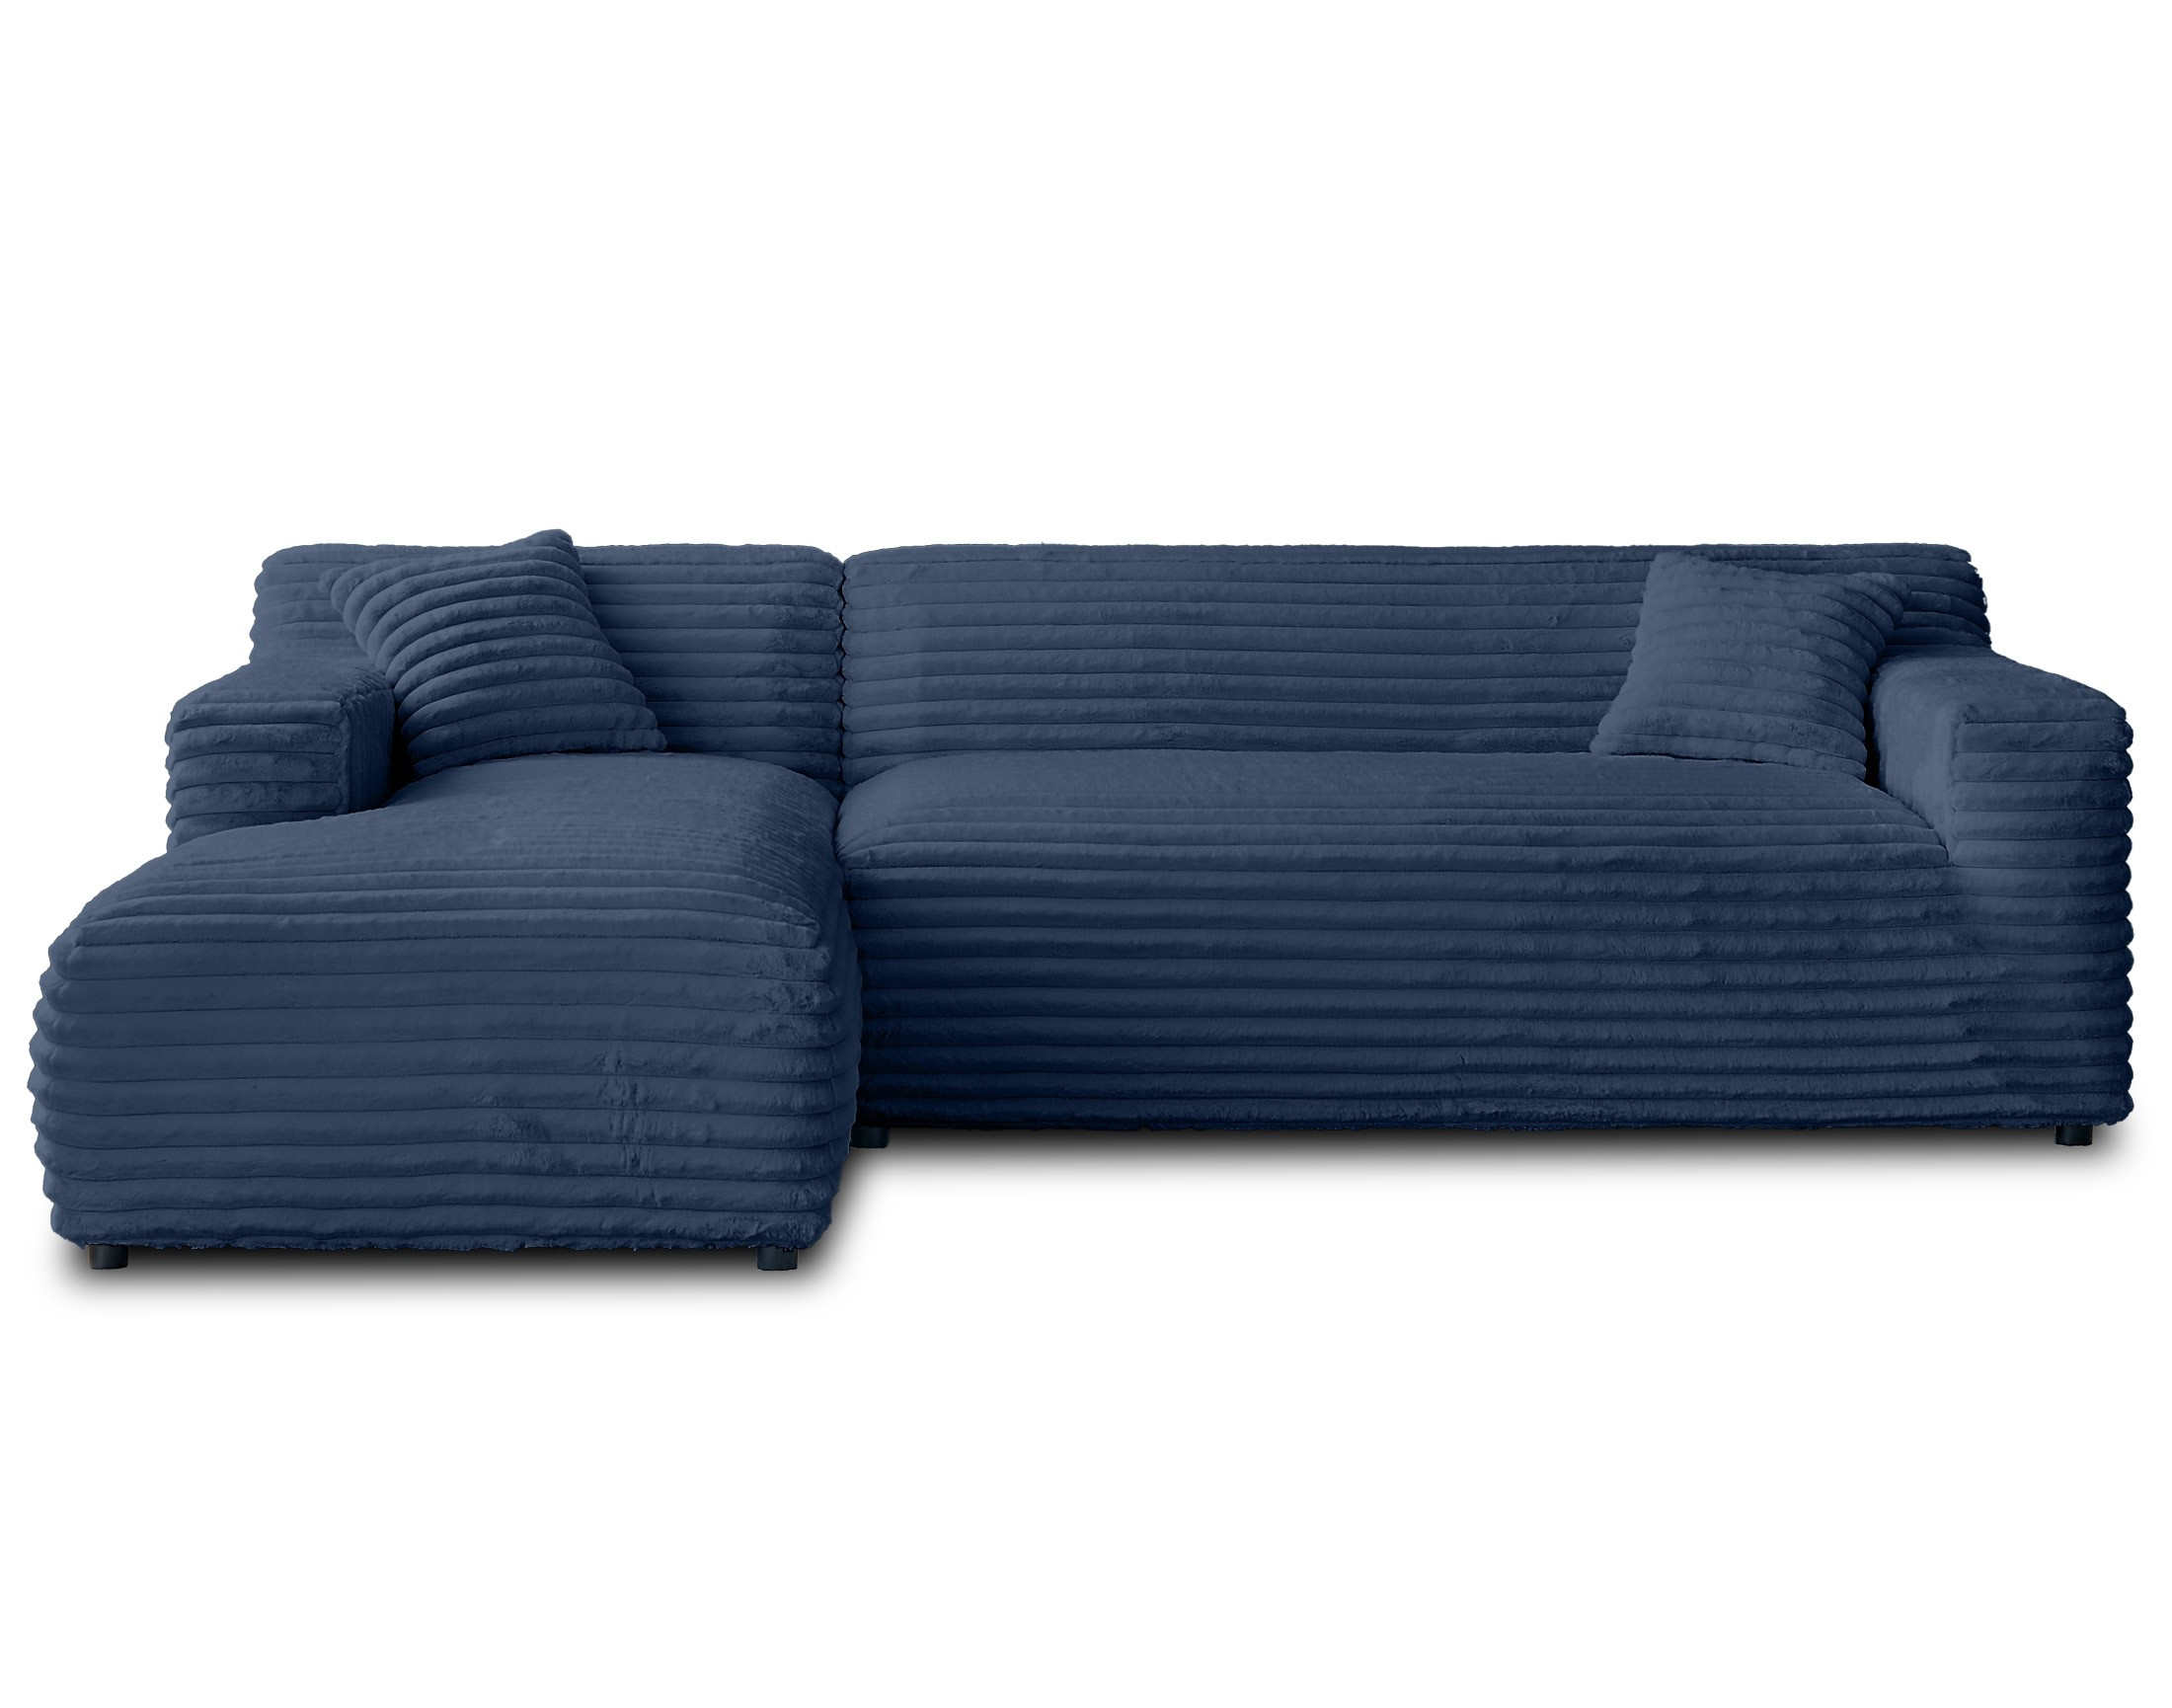 Canapé d'angle 4 places Bleu Velours Design Confort Promotion